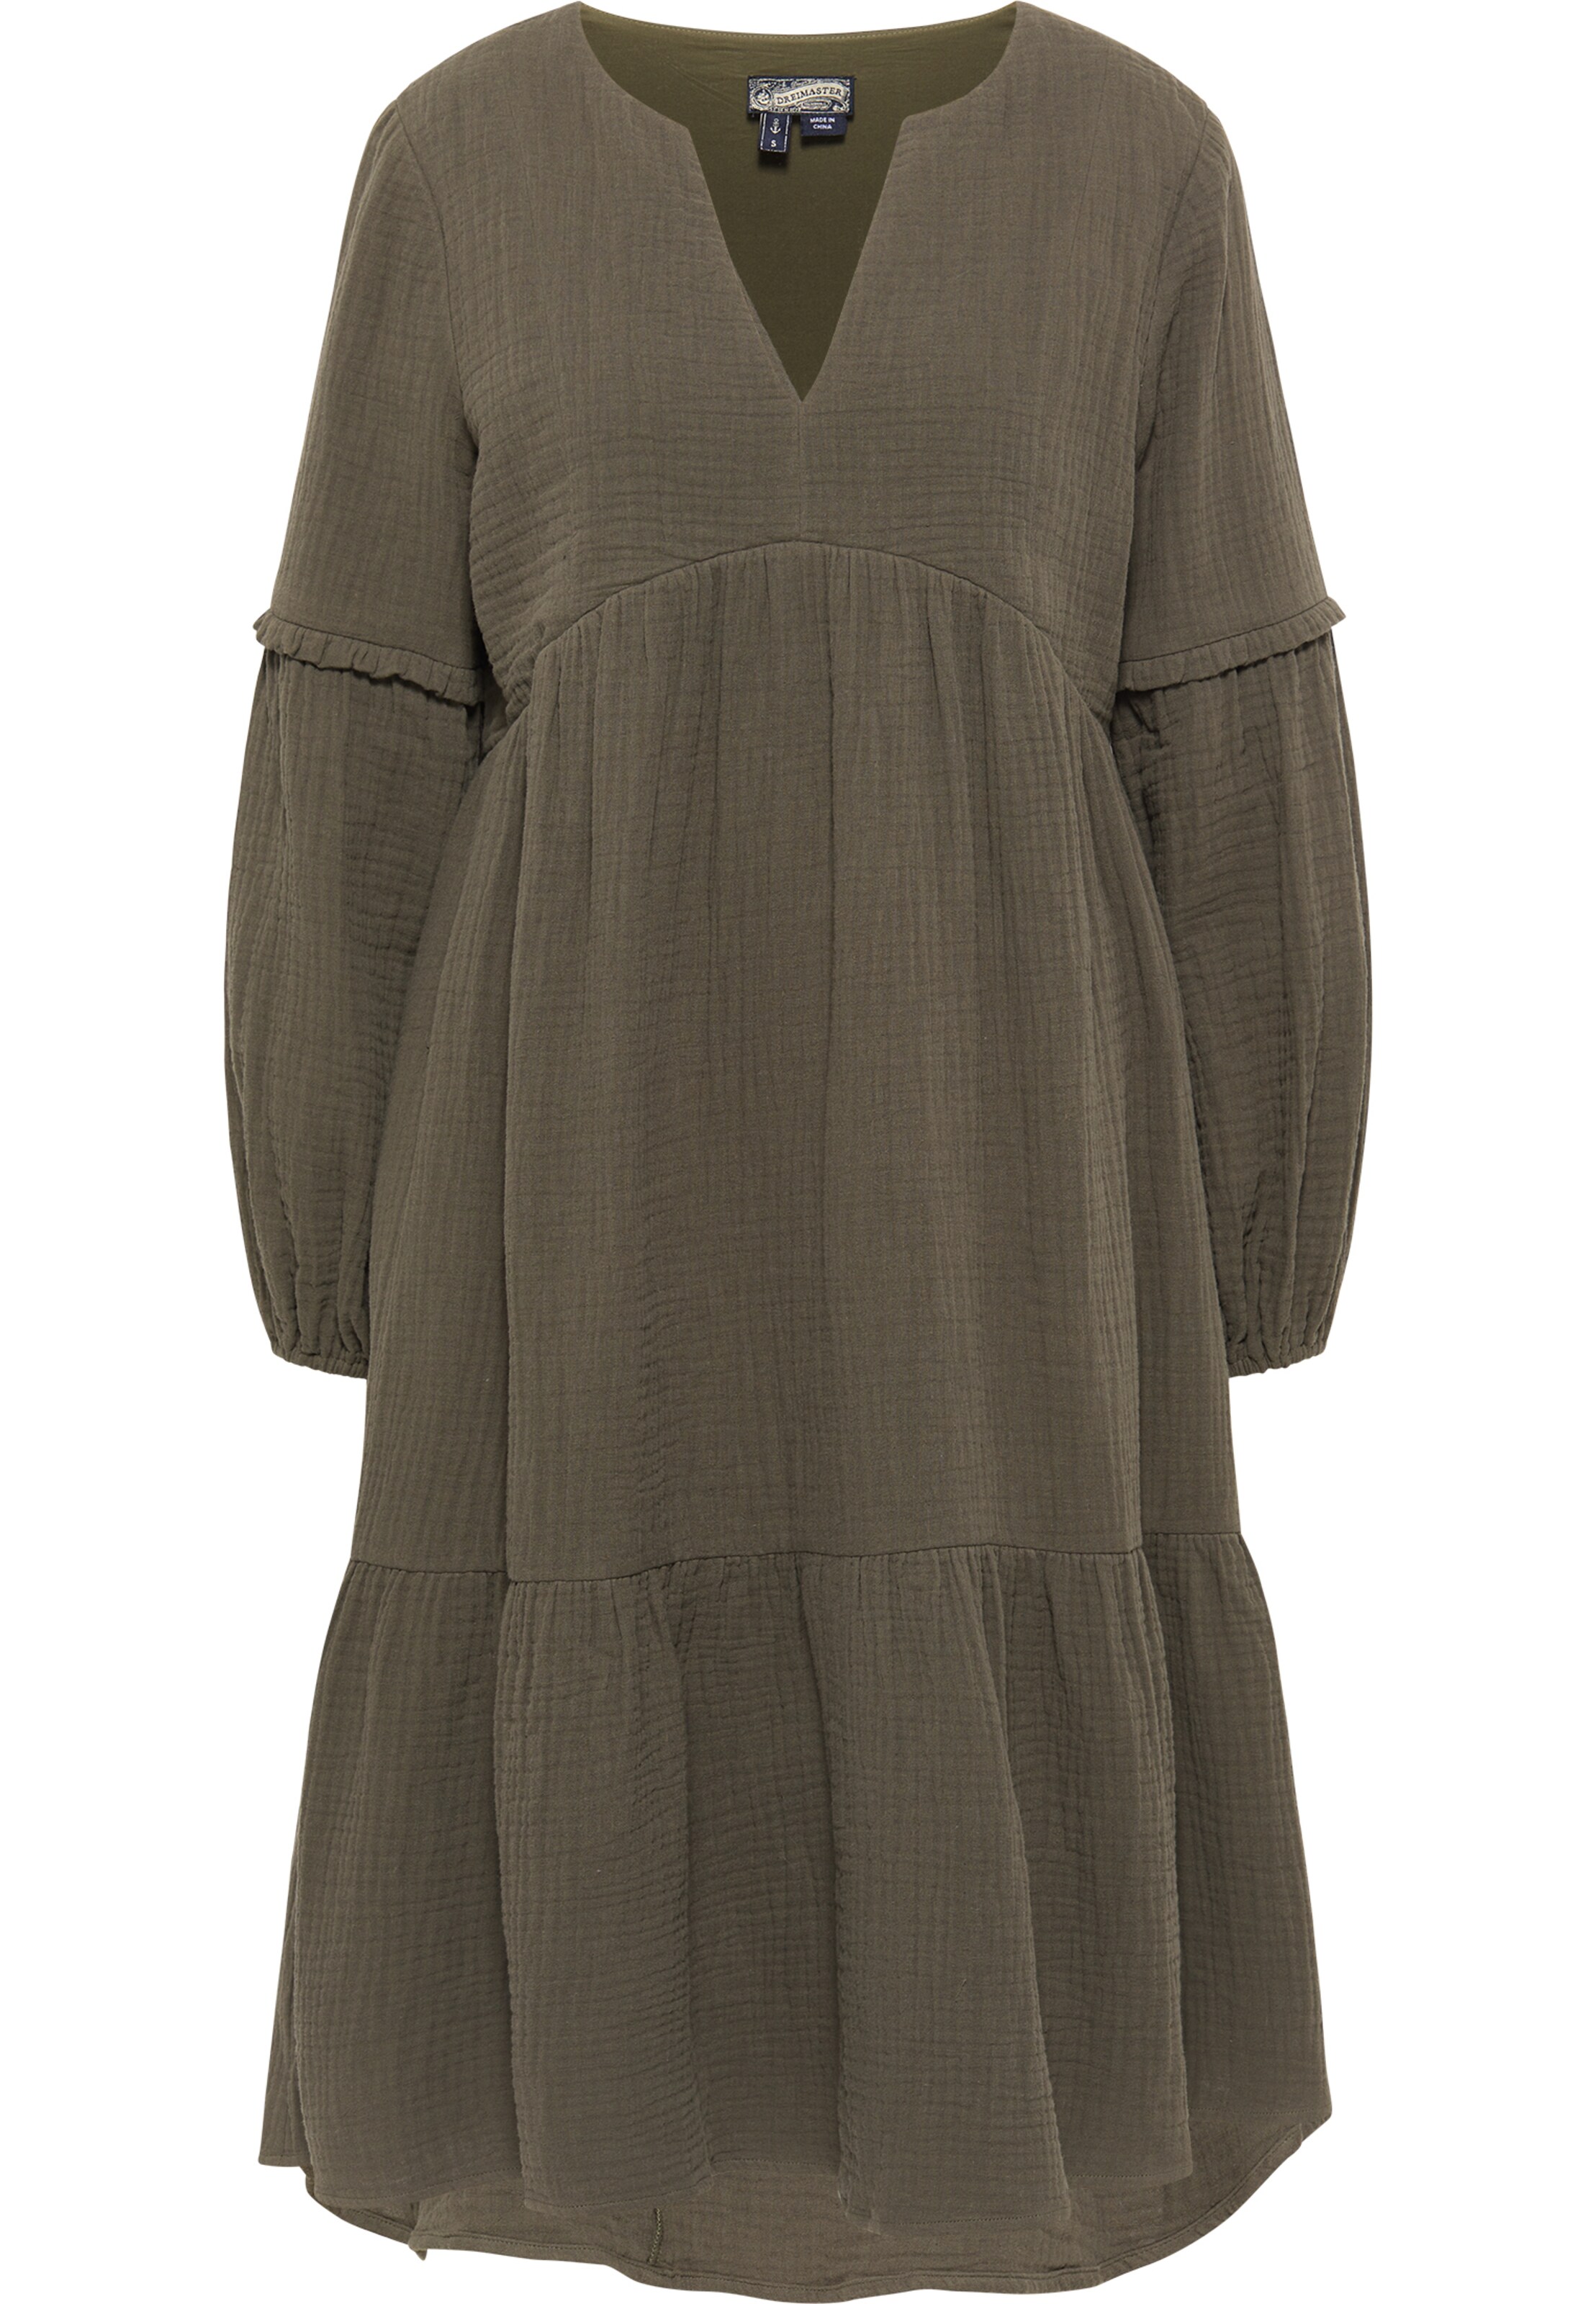 Frauen Kleider DreiMaster Vintage Kleid in Oliv - VI27462